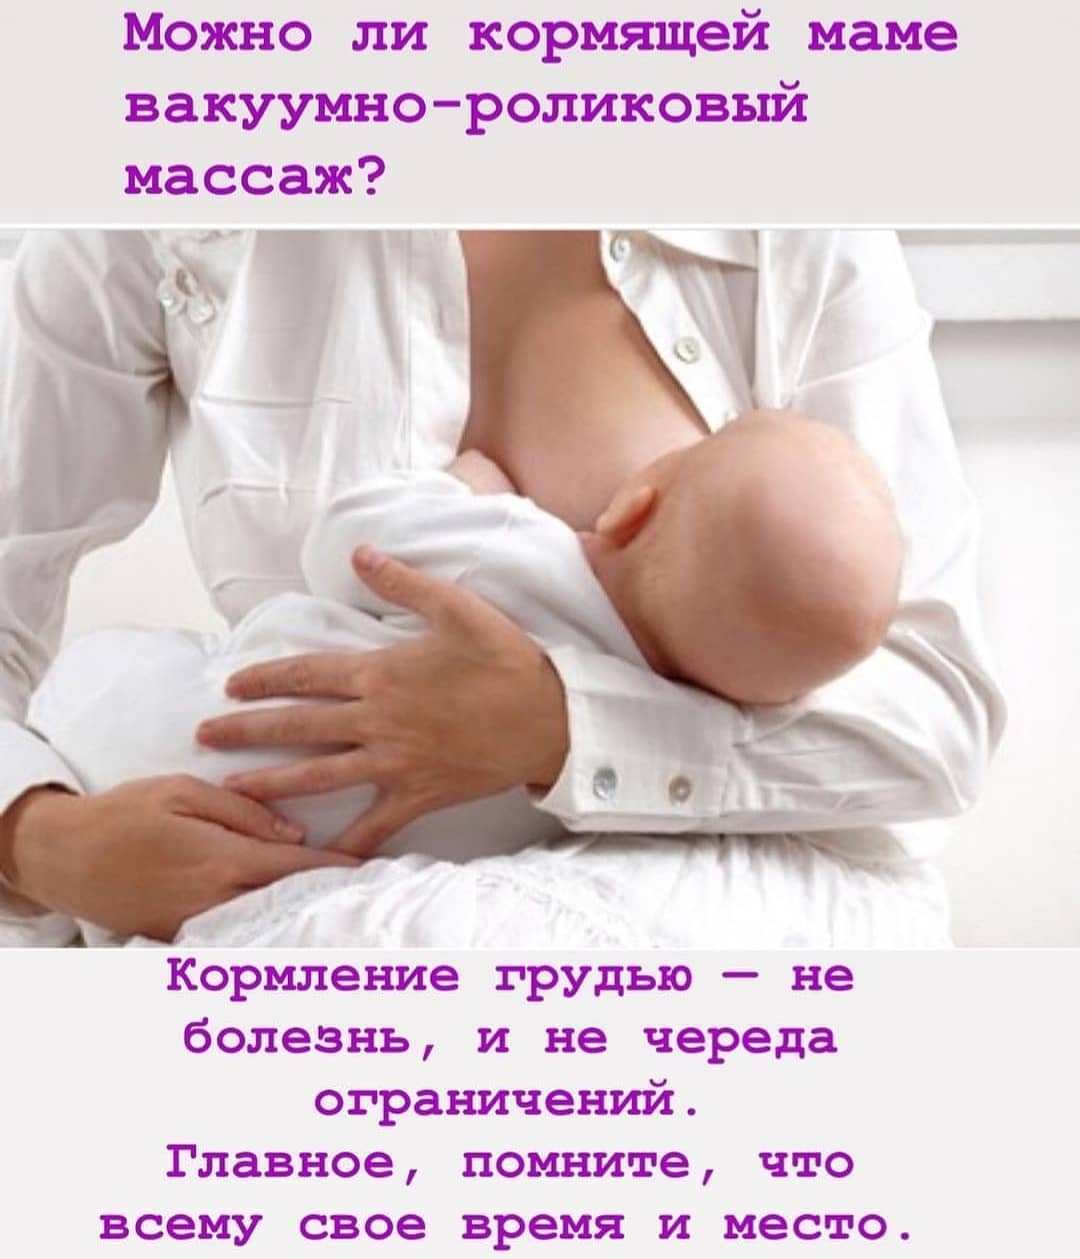 массаж грудью при беременности фото 53